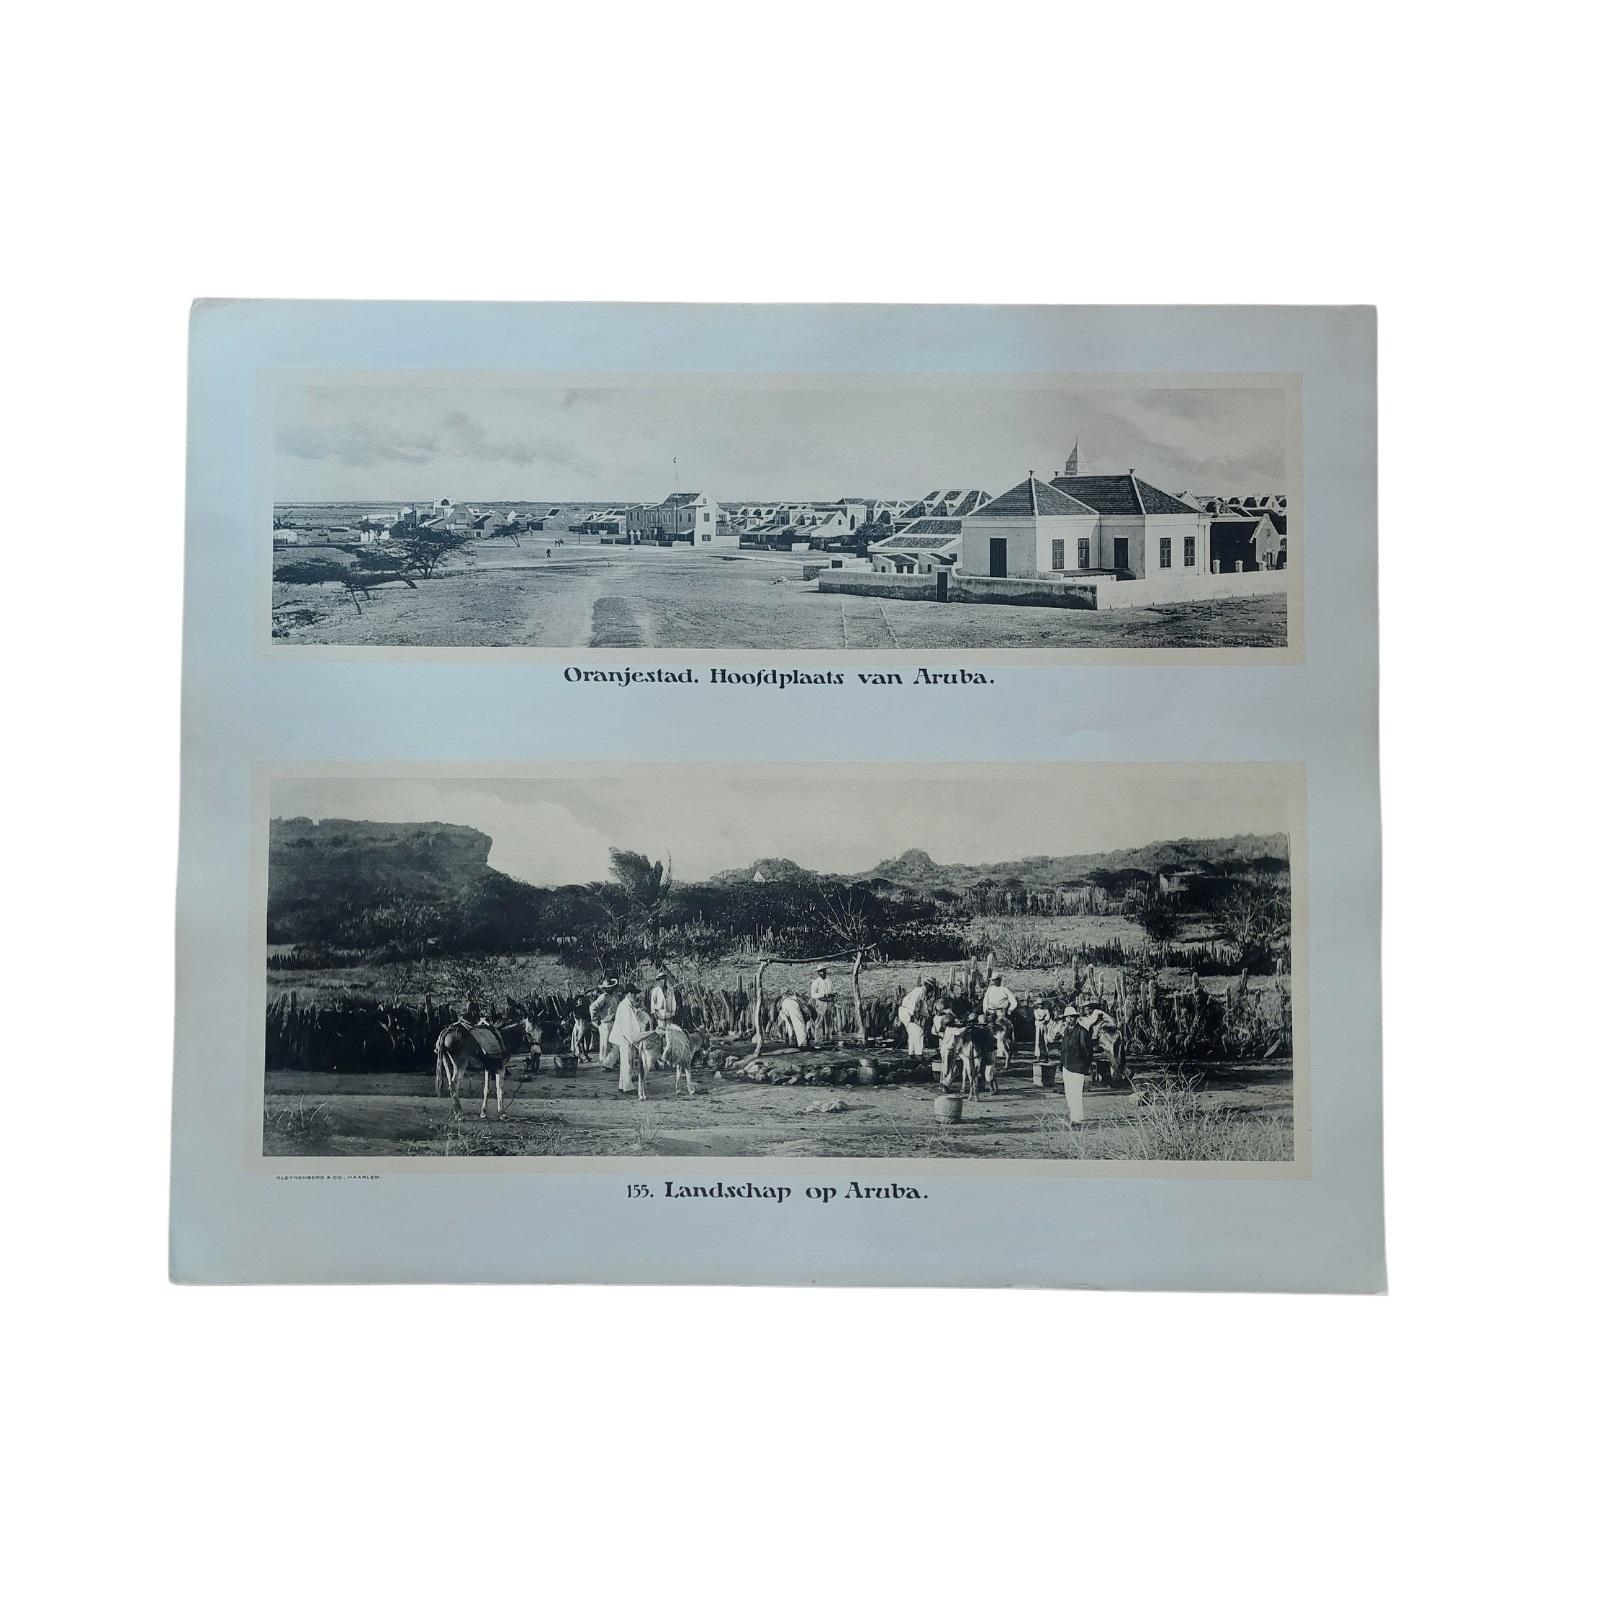 Set of 3 original antique prints:
1) 169. Willemstad-Curacau. Gezicht op Punda.
2) 154. Landschap op Bonaire. Bonaire. Gezicht op Kralendijk.
3) 155. Landschap op Aruba. Oranjestad Hoofdplaats van Aruba.
These prints were originally published as